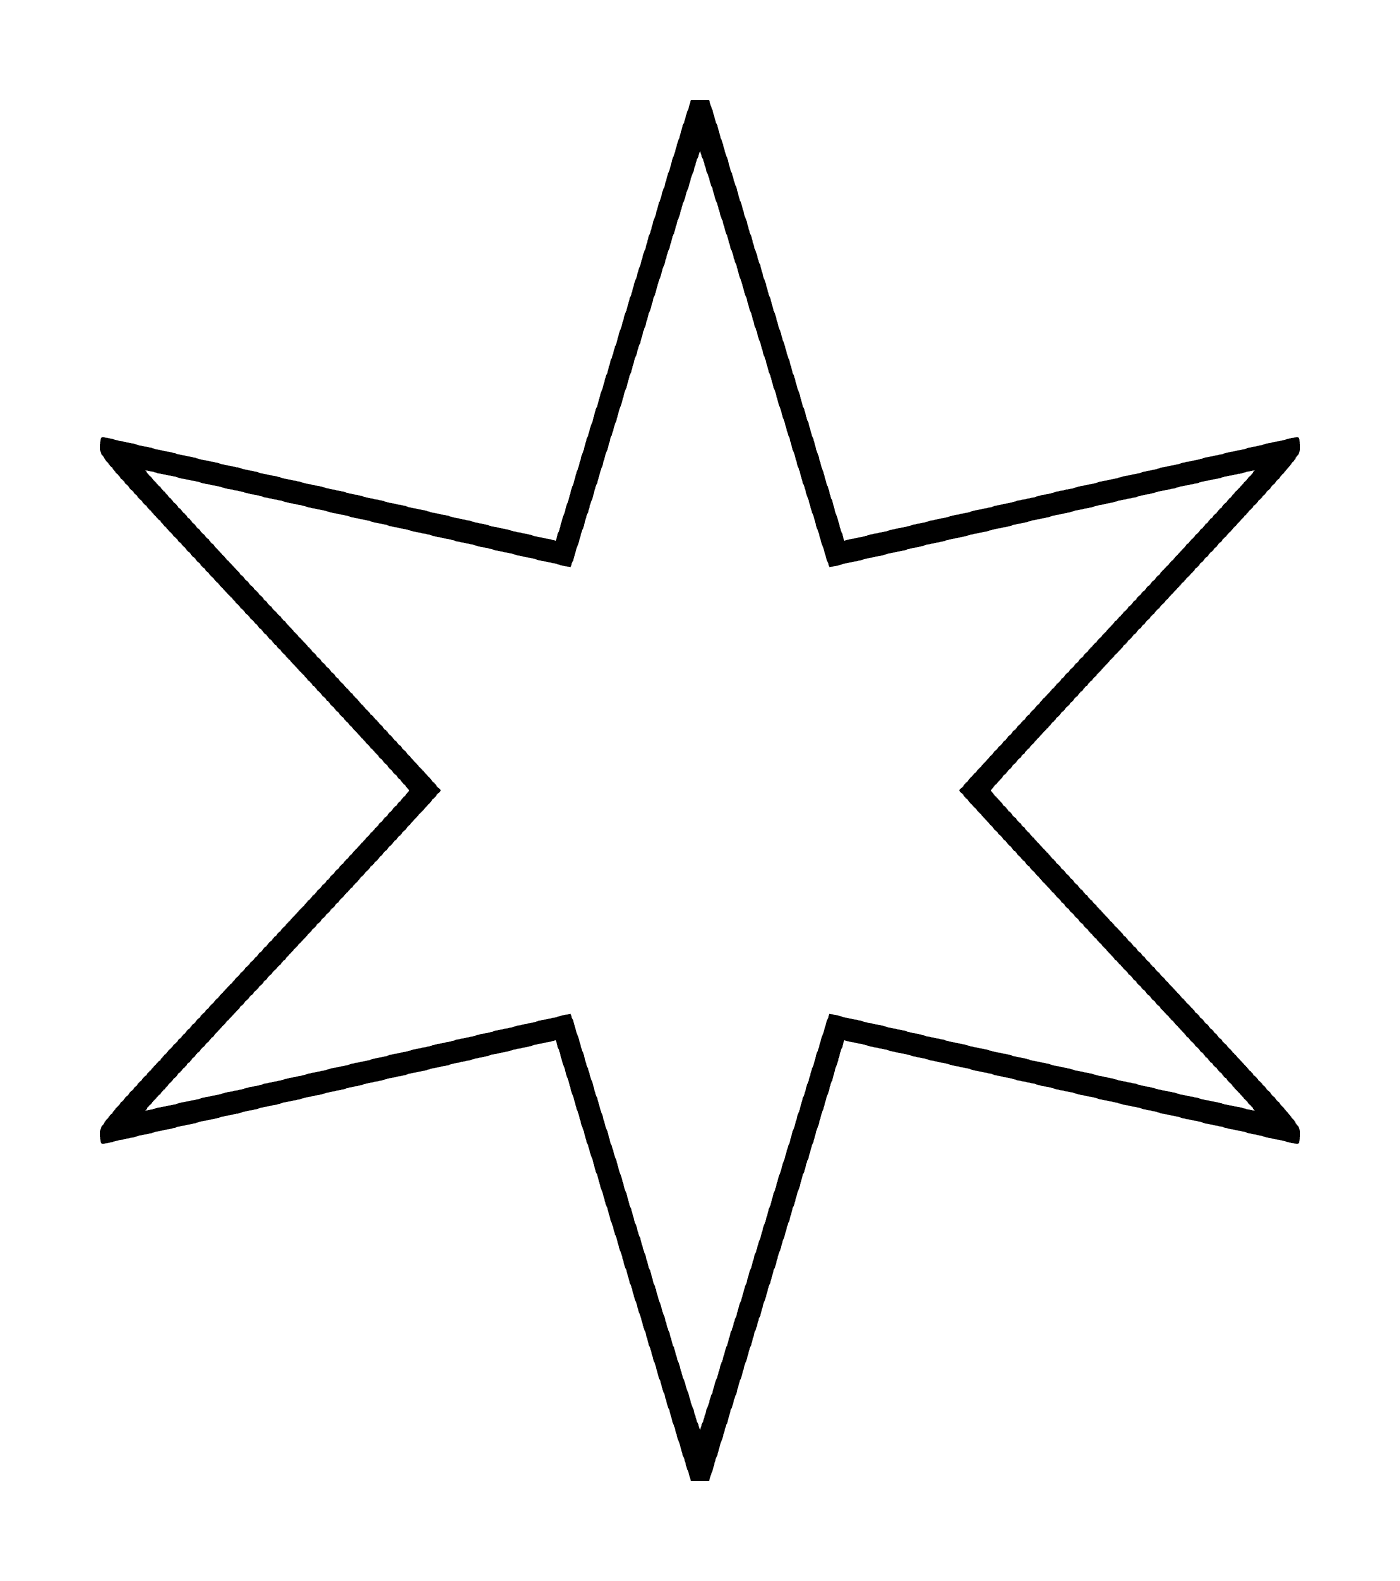  Una estrella de seis puntas que se asemeja a una flor 